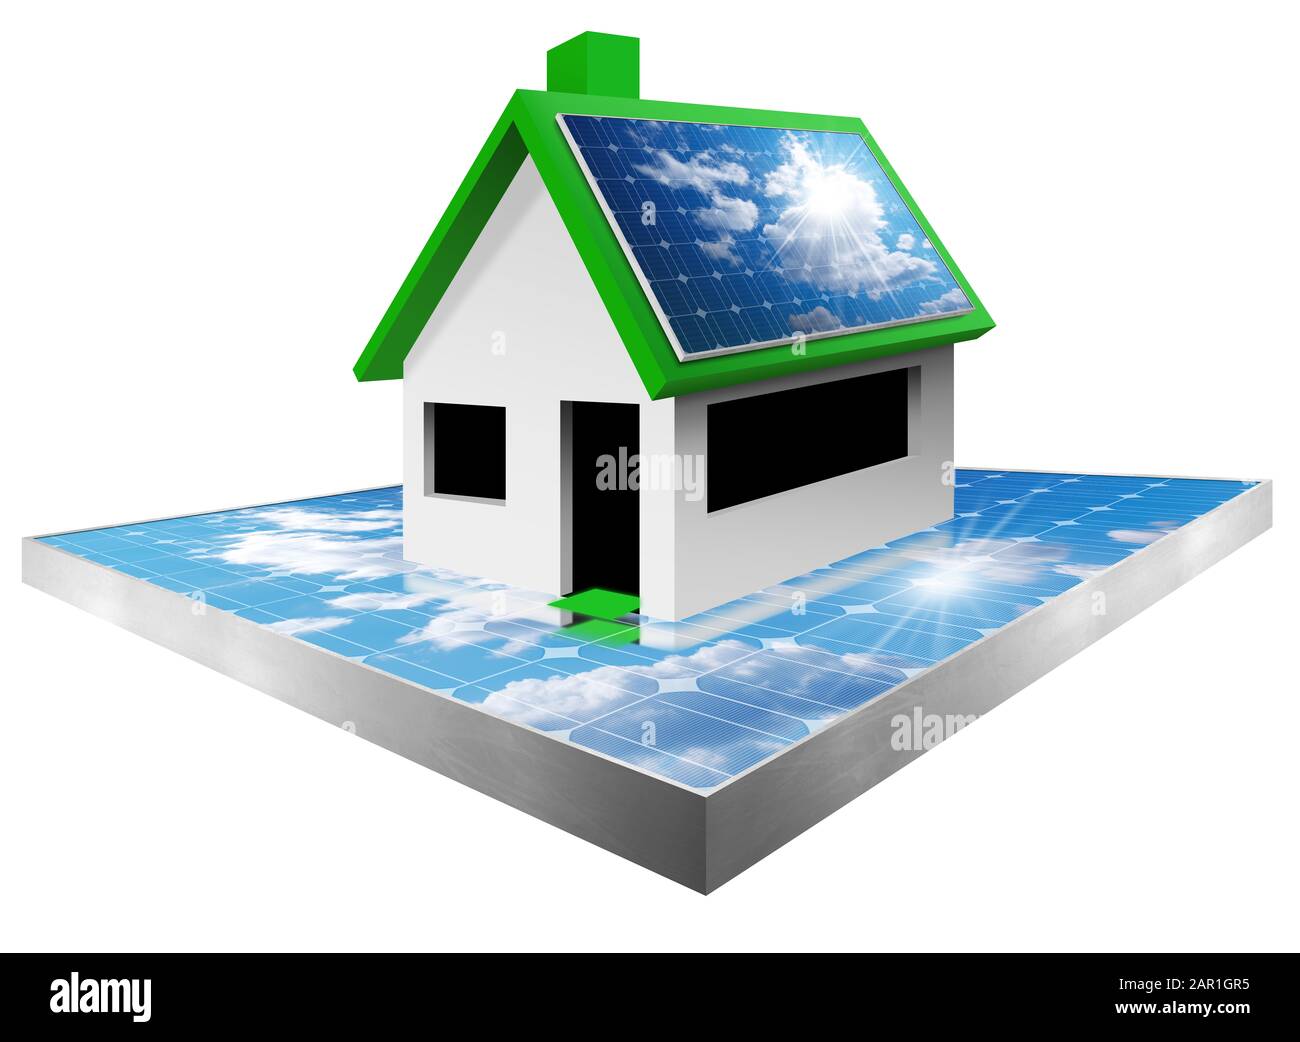 3D-Abbildung eines Modellhauses mit zwei Solarmodulen, eines auf dem Dach und eines unten. Isoliert auf weißem Hintergrund. Konzept der erneuerbaren Energien Stockfoto